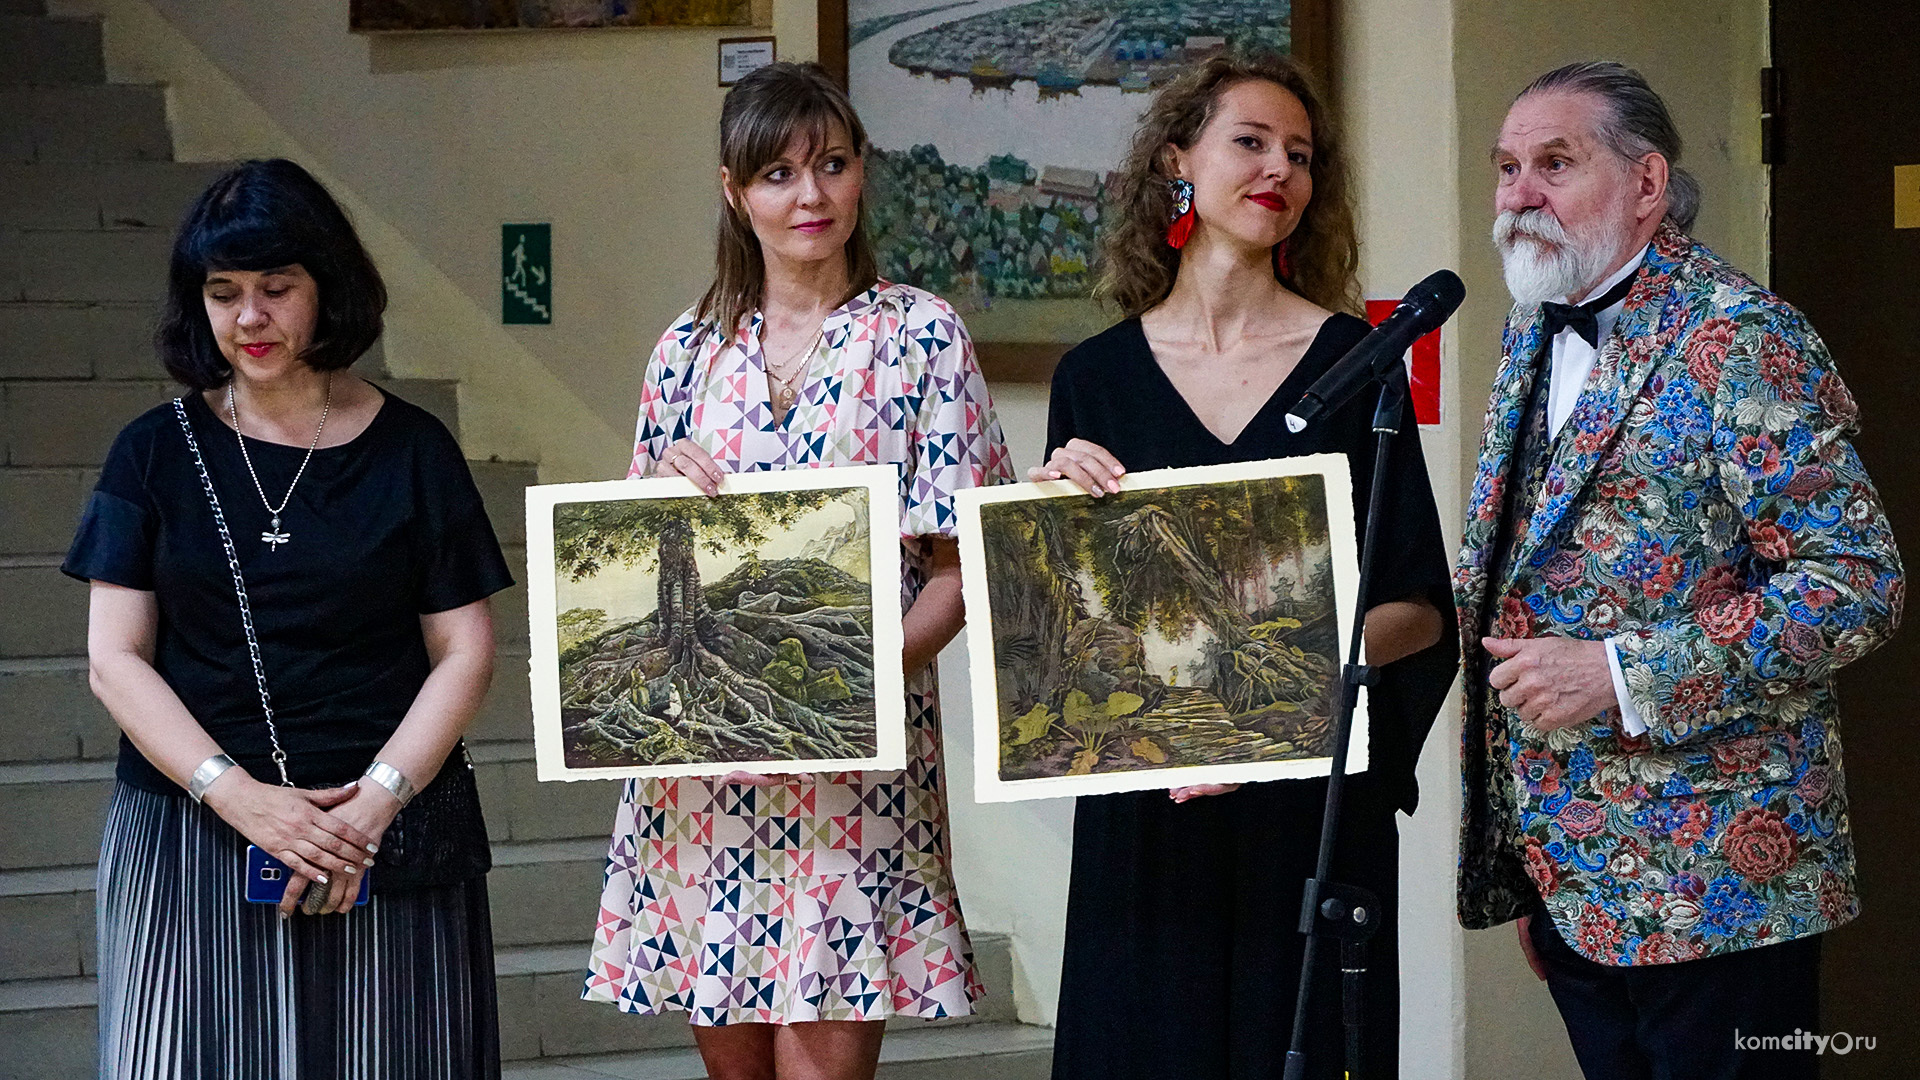 Художественный музей получил в подарок три картины московских художников